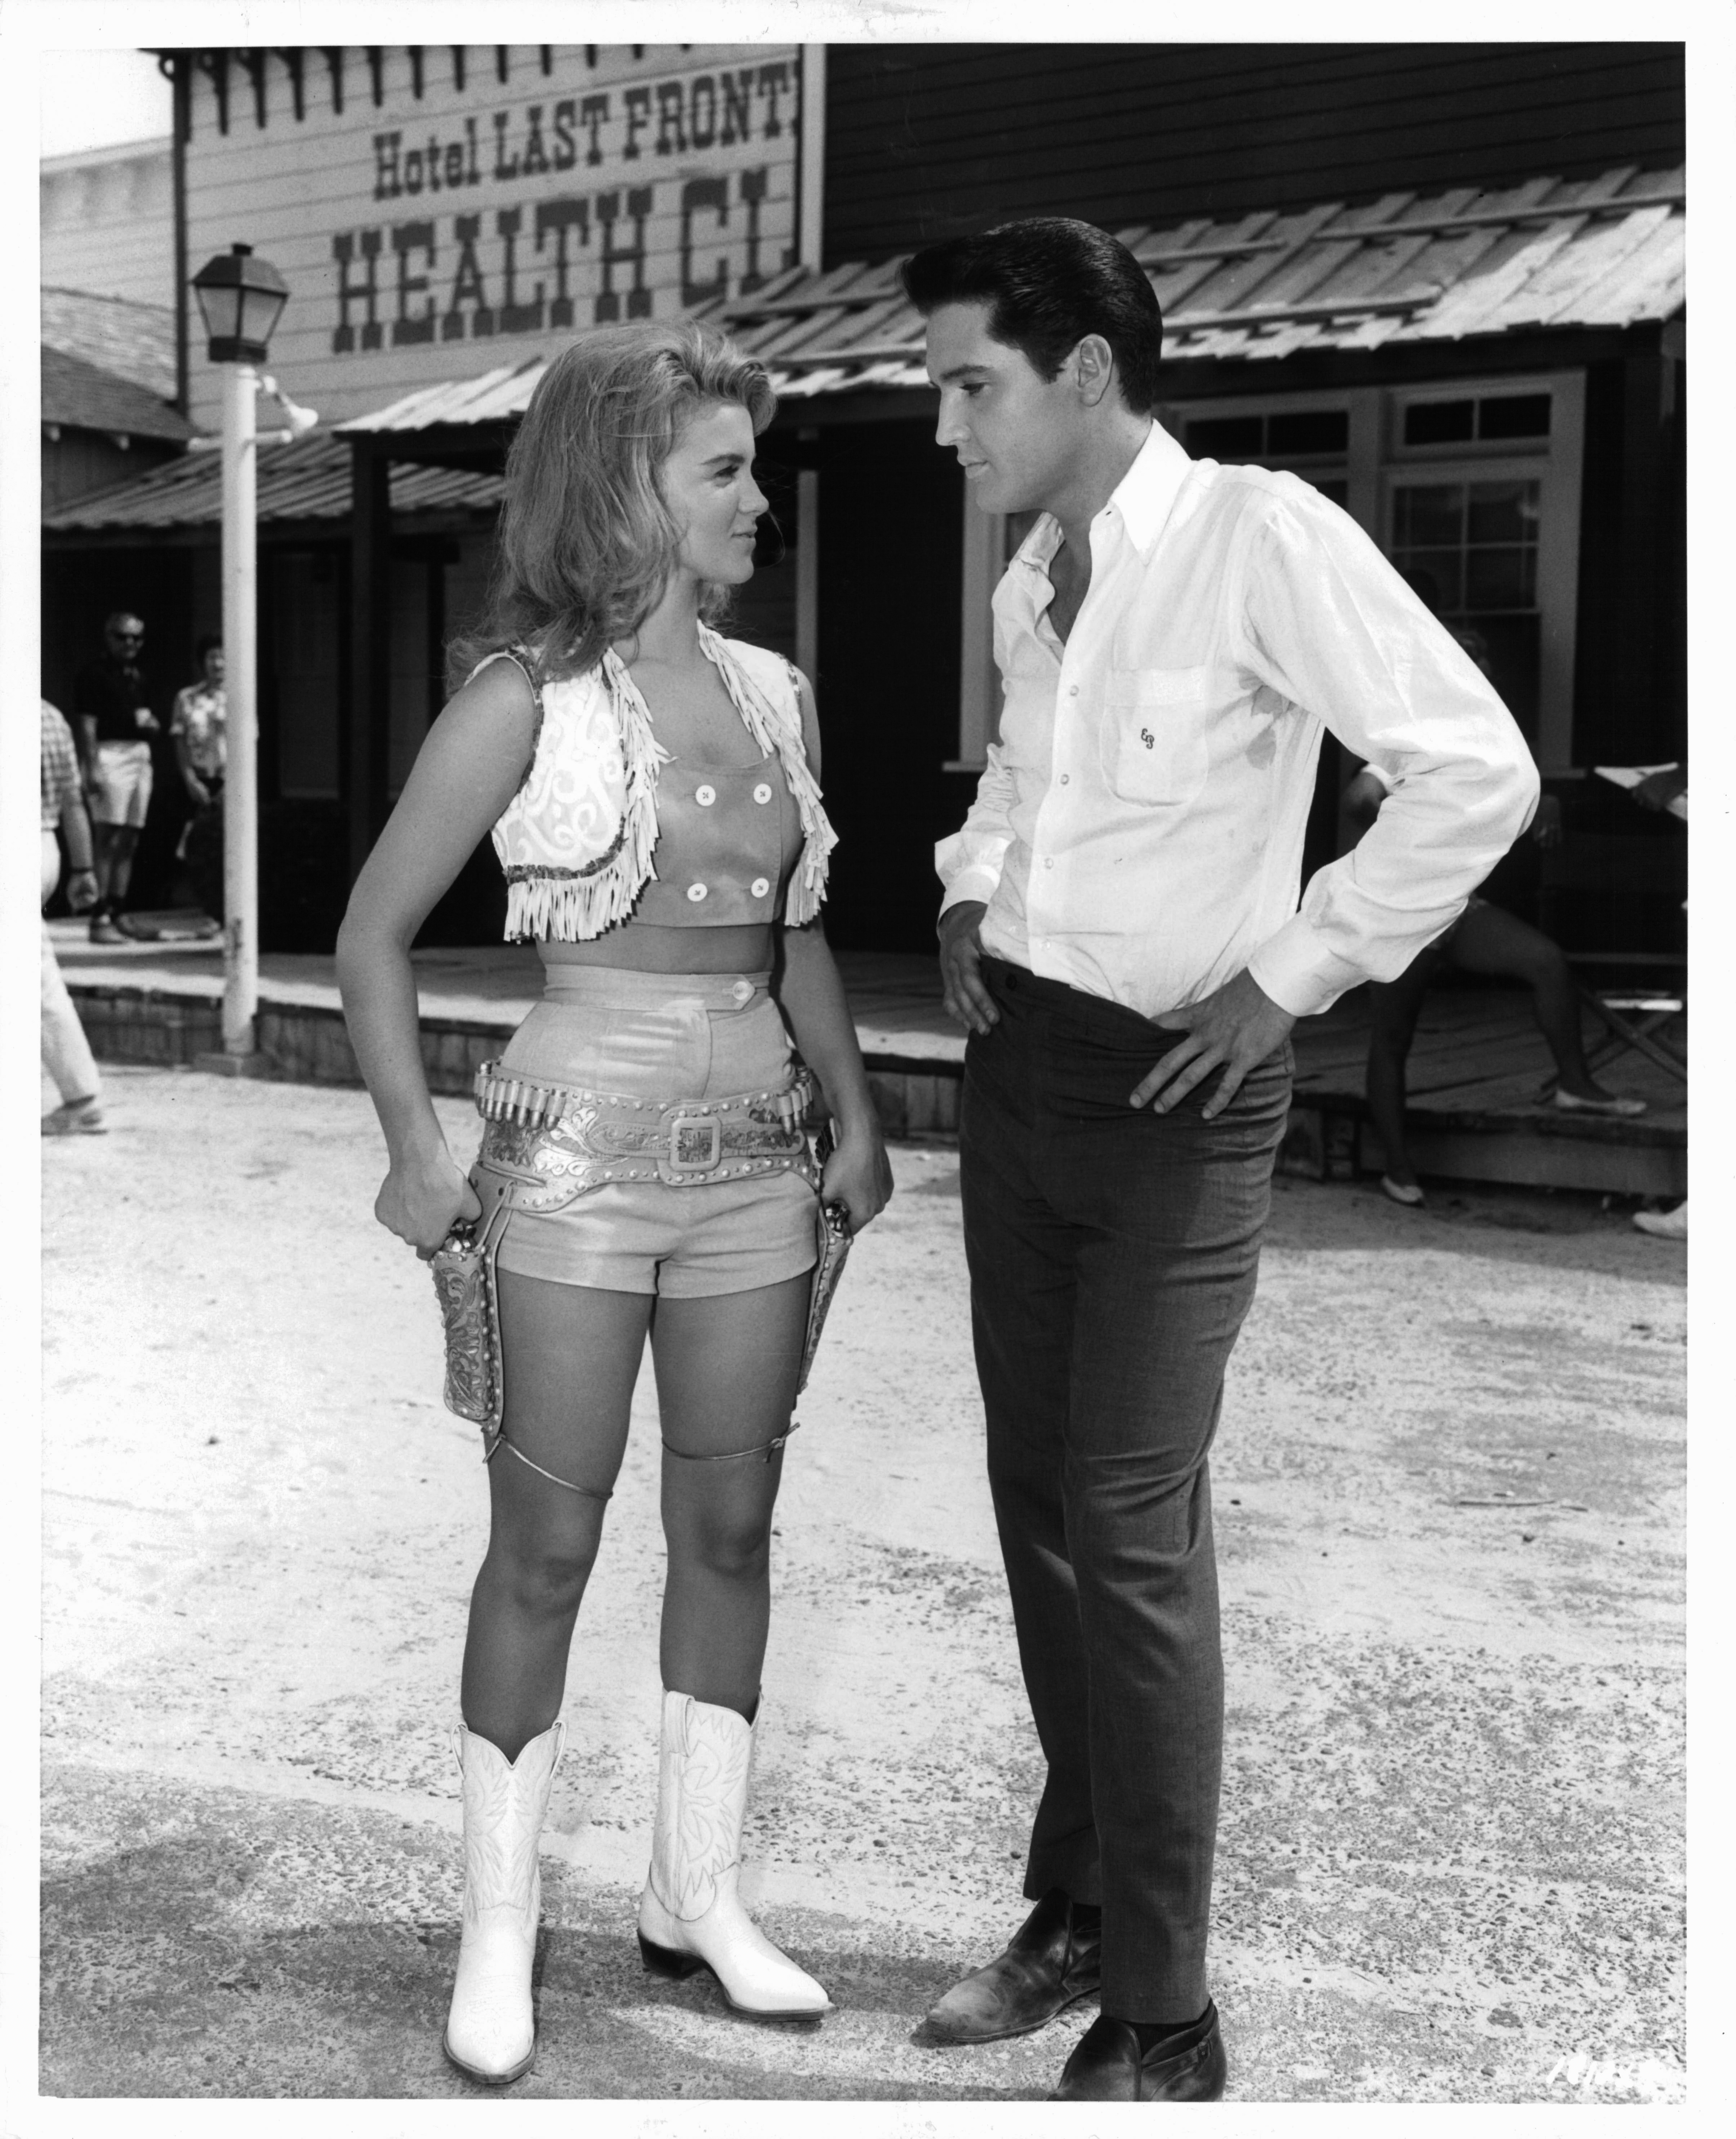 Still of Elvis Presley and Ann-Margret in Viva Las Vegas (1964)